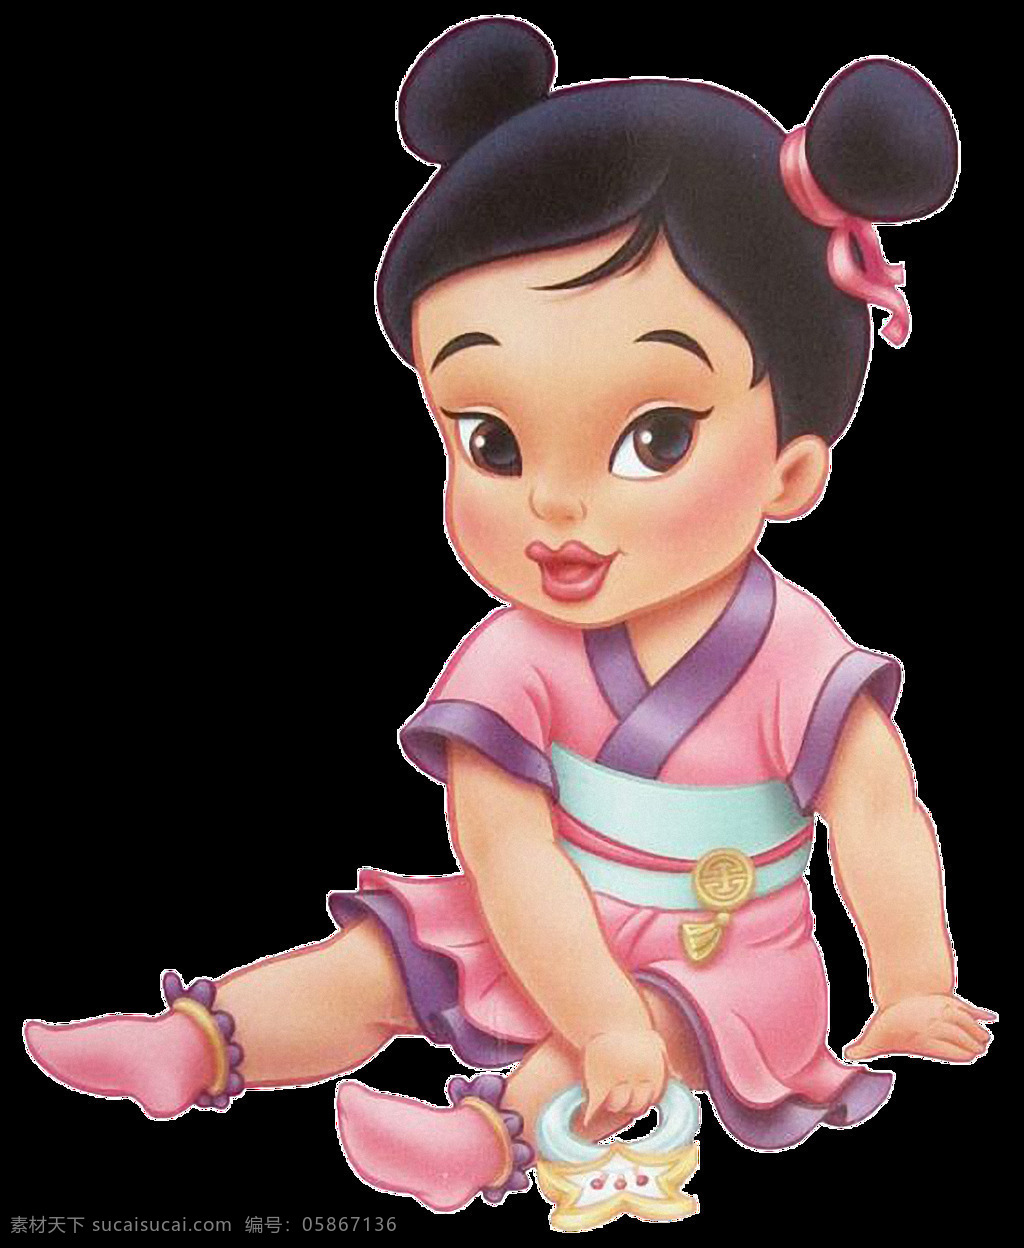 可爱 中国 古代 幼儿 免 抠 透明 图 层 宝宝 婴儿 萌 大全 婴儿卡通图片 中国婴儿图片 外国婴儿图片 可爱婴儿图片 幼儿图片 可爱幼儿